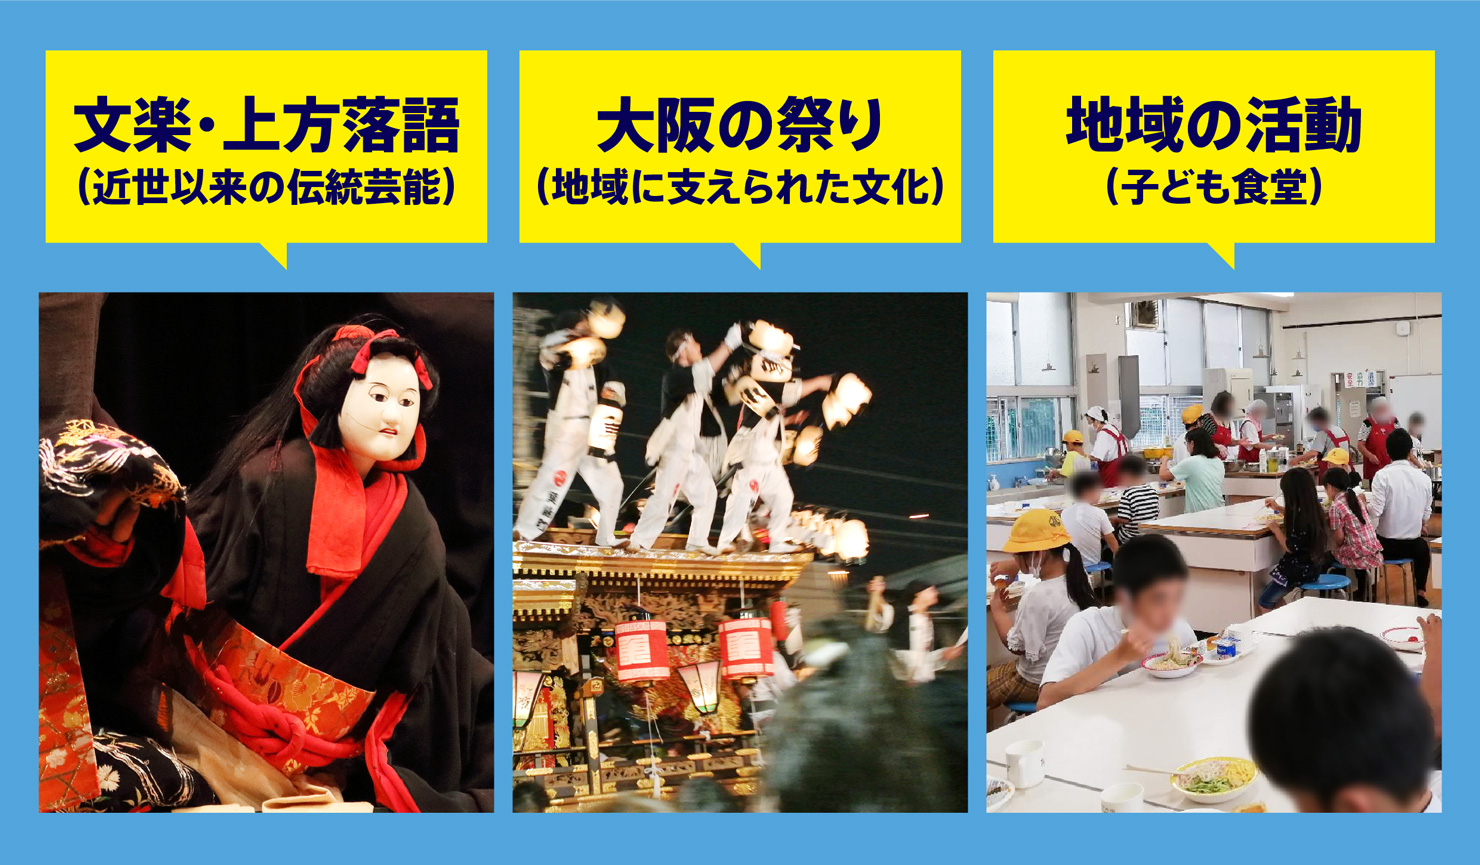 文楽・上方落語（近世以来の伝統芸能）、大阪の祭り（地域に支えられた文化）、地域の活動（子ども食堂）など